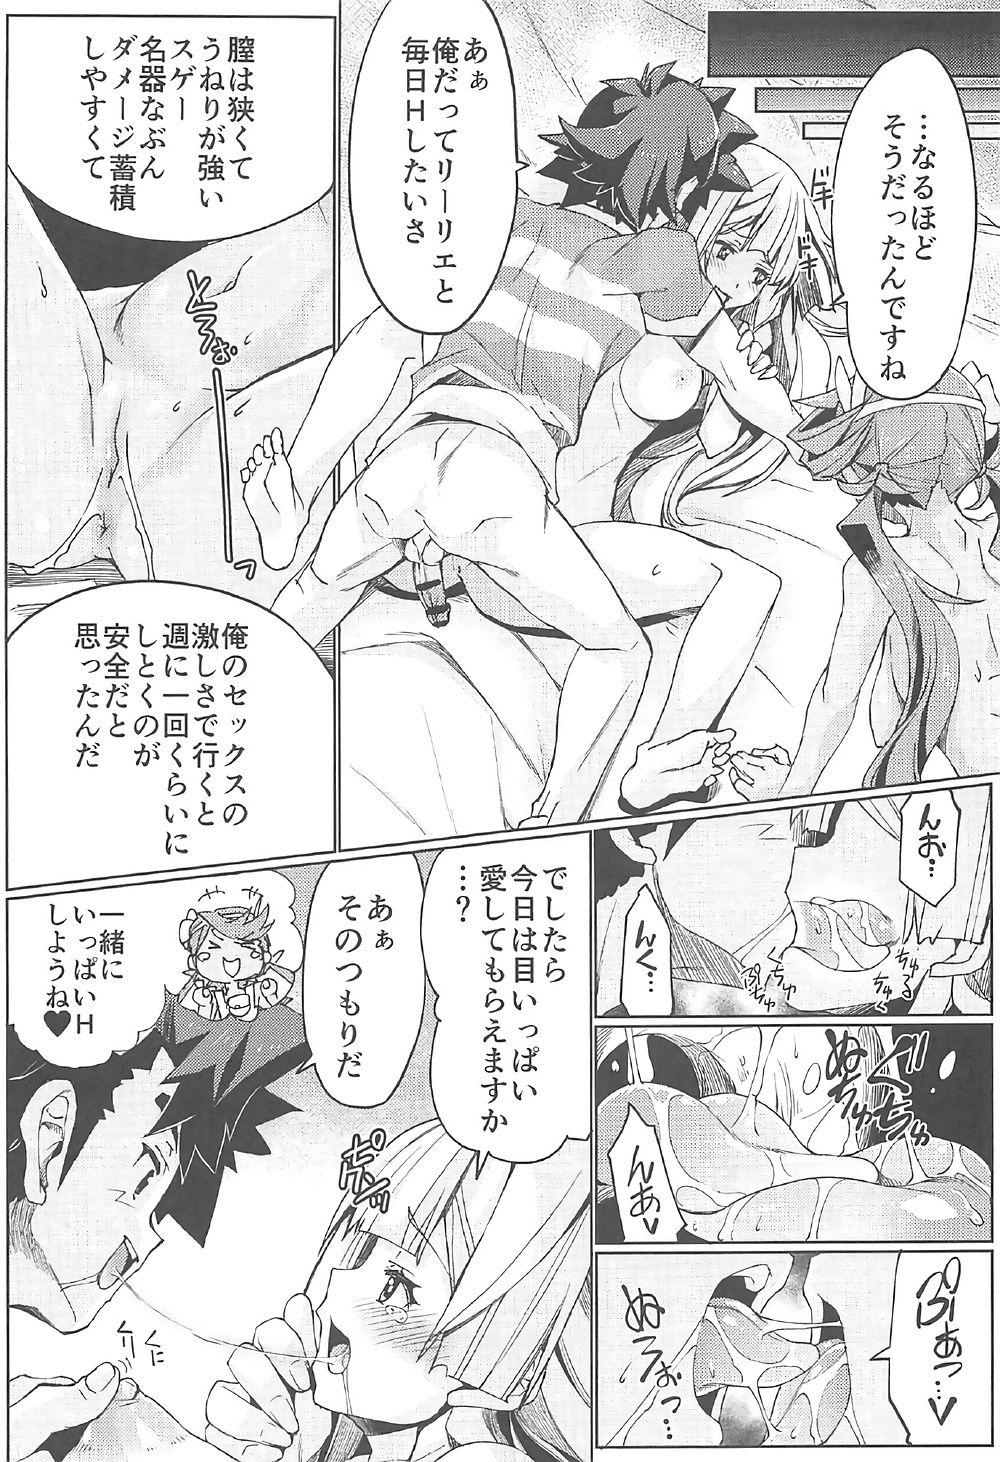 Bed Watashi ga sono Ki ni nareba Ronriteki ni! 2!! - Pokemon Amature Sex Tapes - Page 10